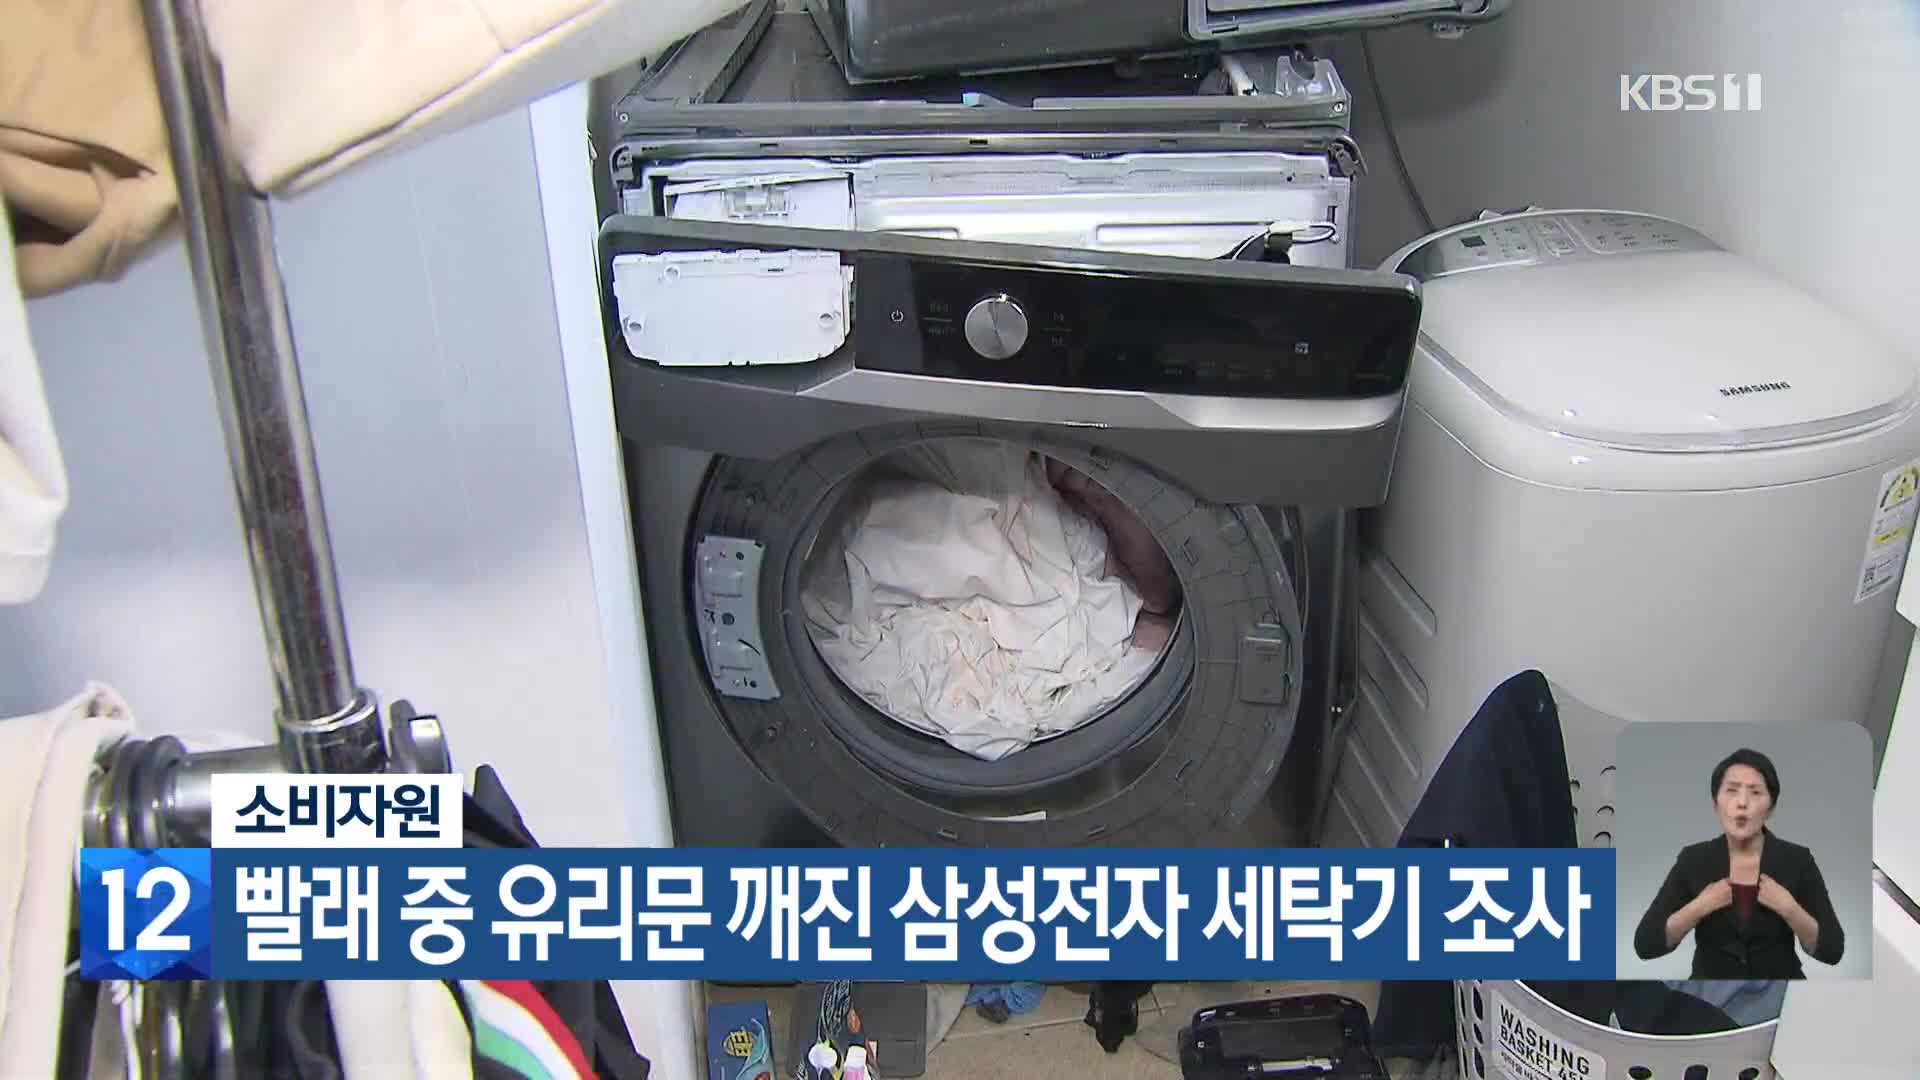 소비자원, 빨래 중 유리문 깨진 삼성전자 세탁기 조사